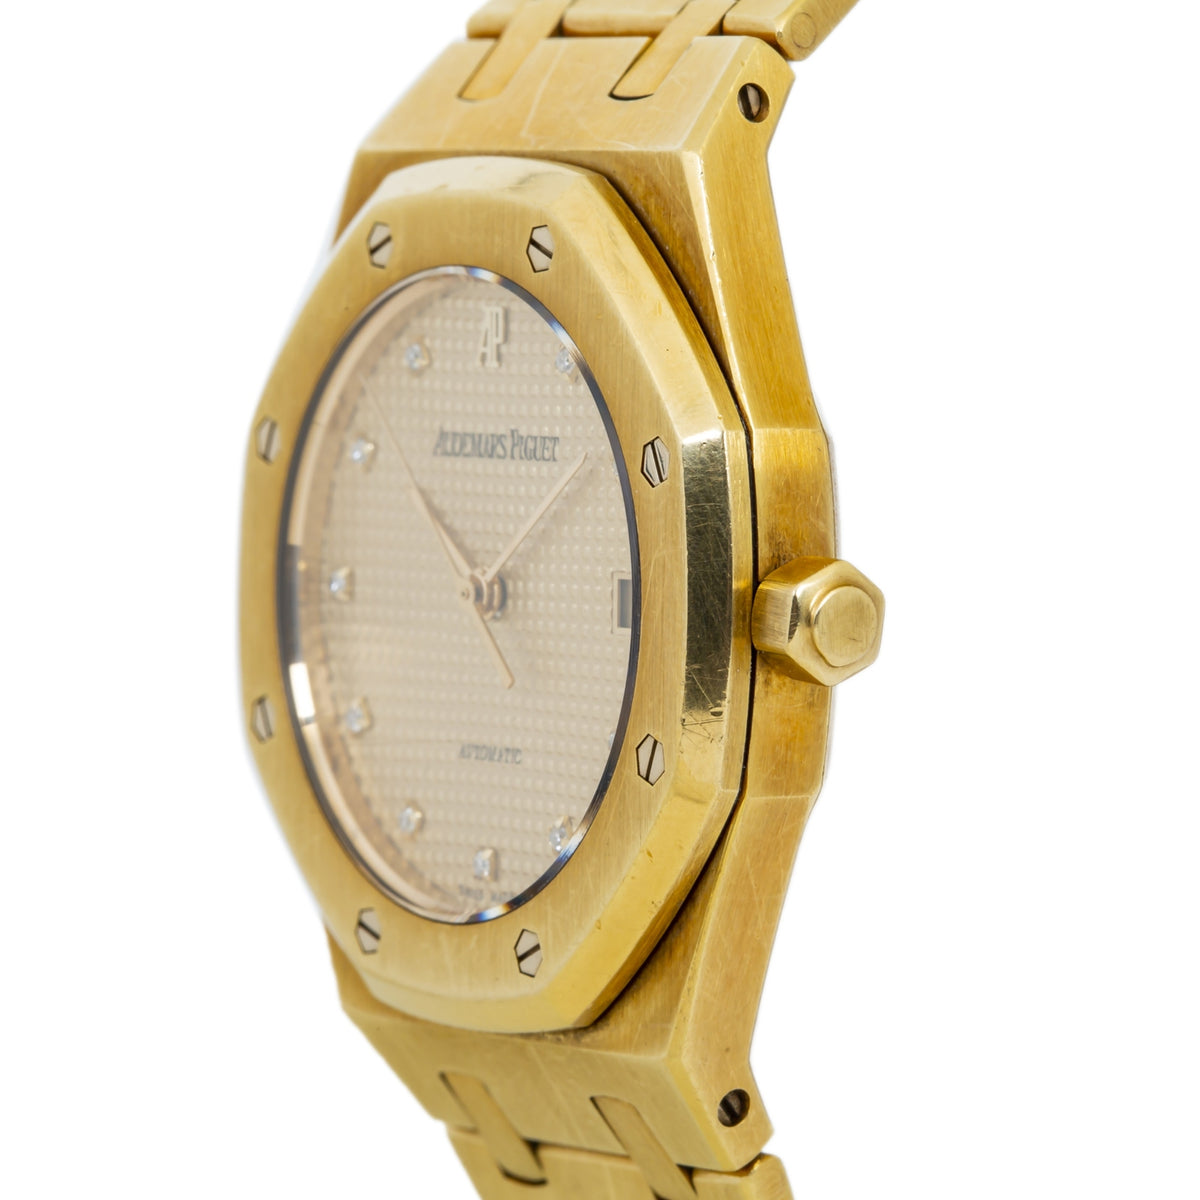 Audemars Piguet Royal Oak 14790BA 1990's 18k Yellow Gold Automatic Watch 36mm